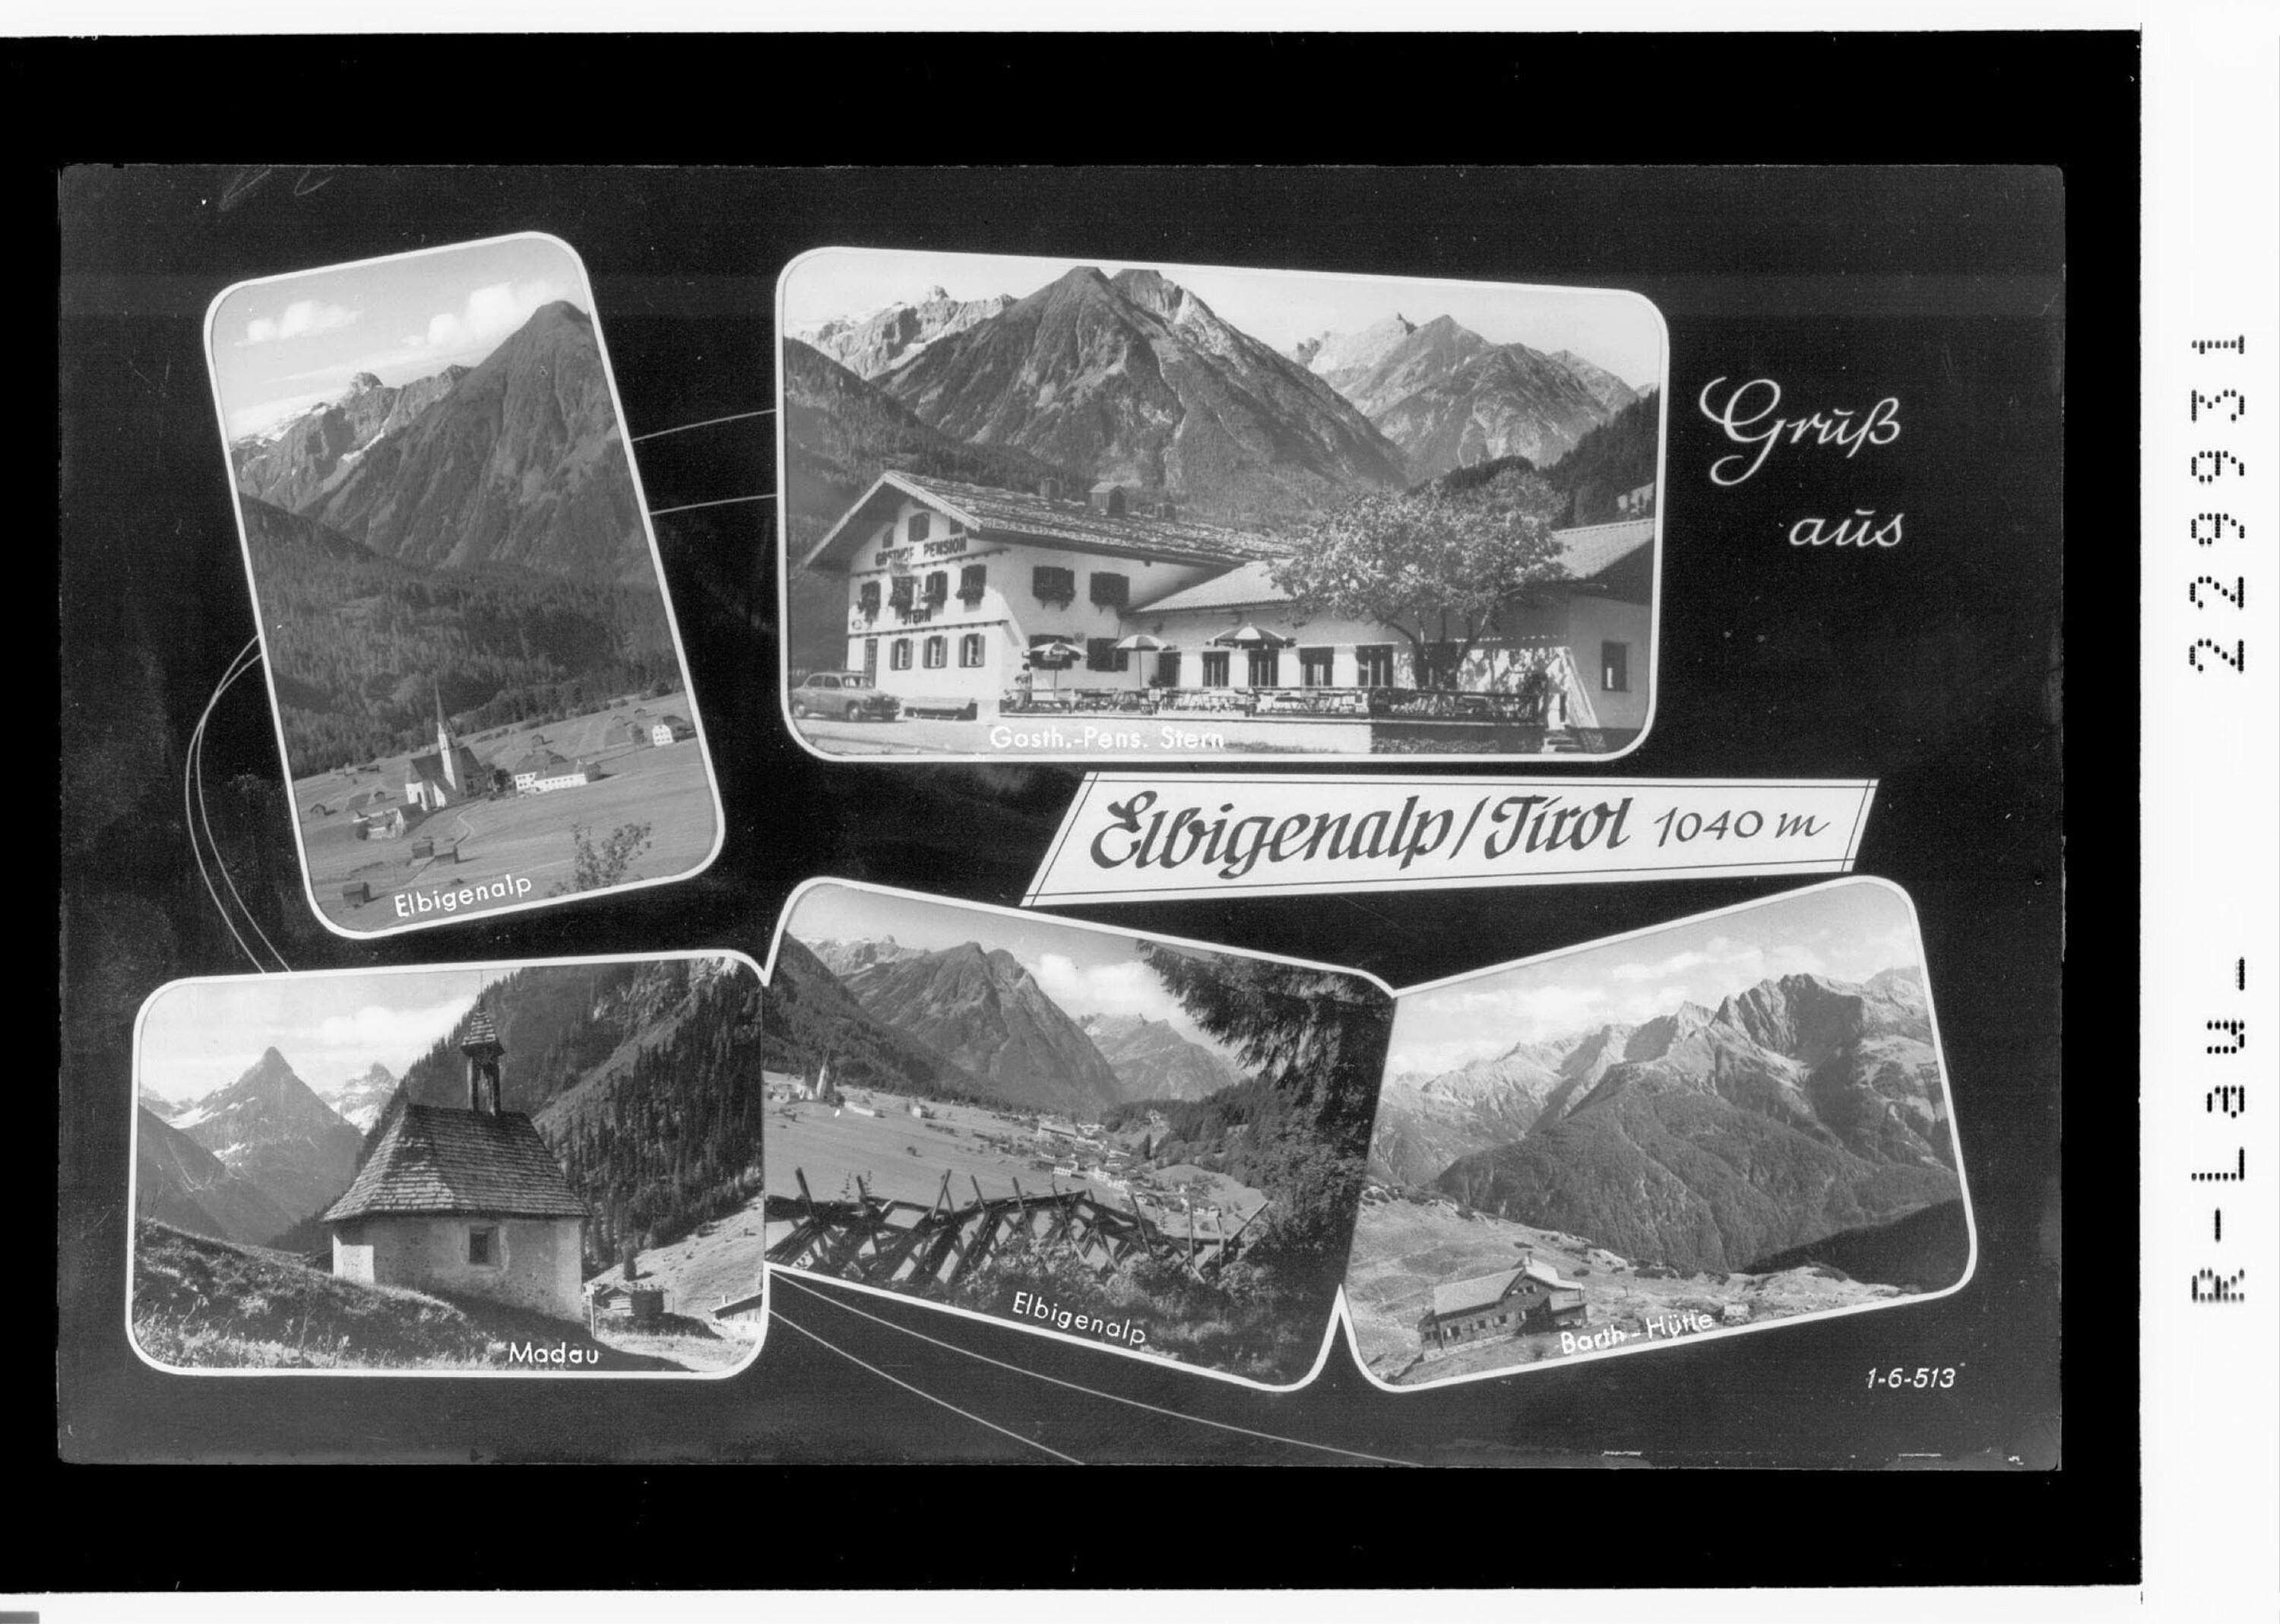 Elbigenalp / Tirol 1040 m></div>


    <hr>
    <div class=